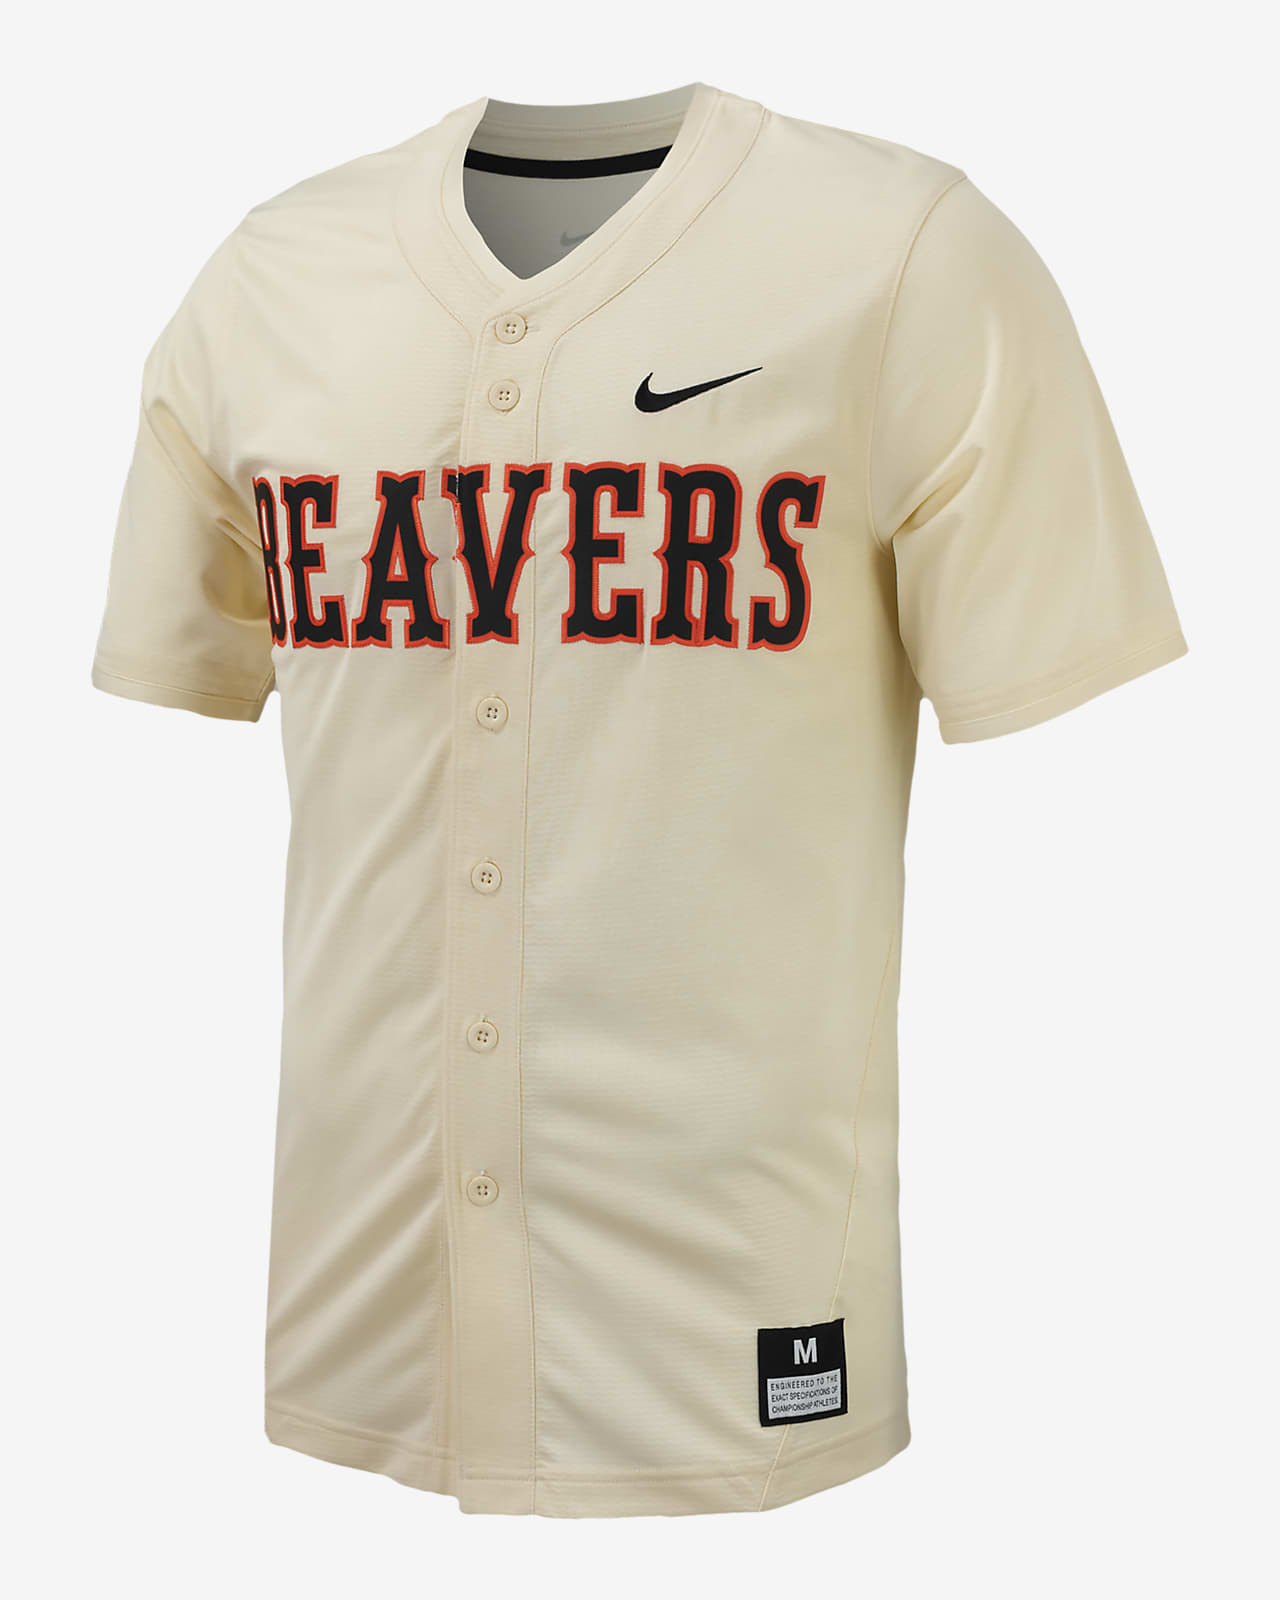 Oregon State Beavers softball champions jersey